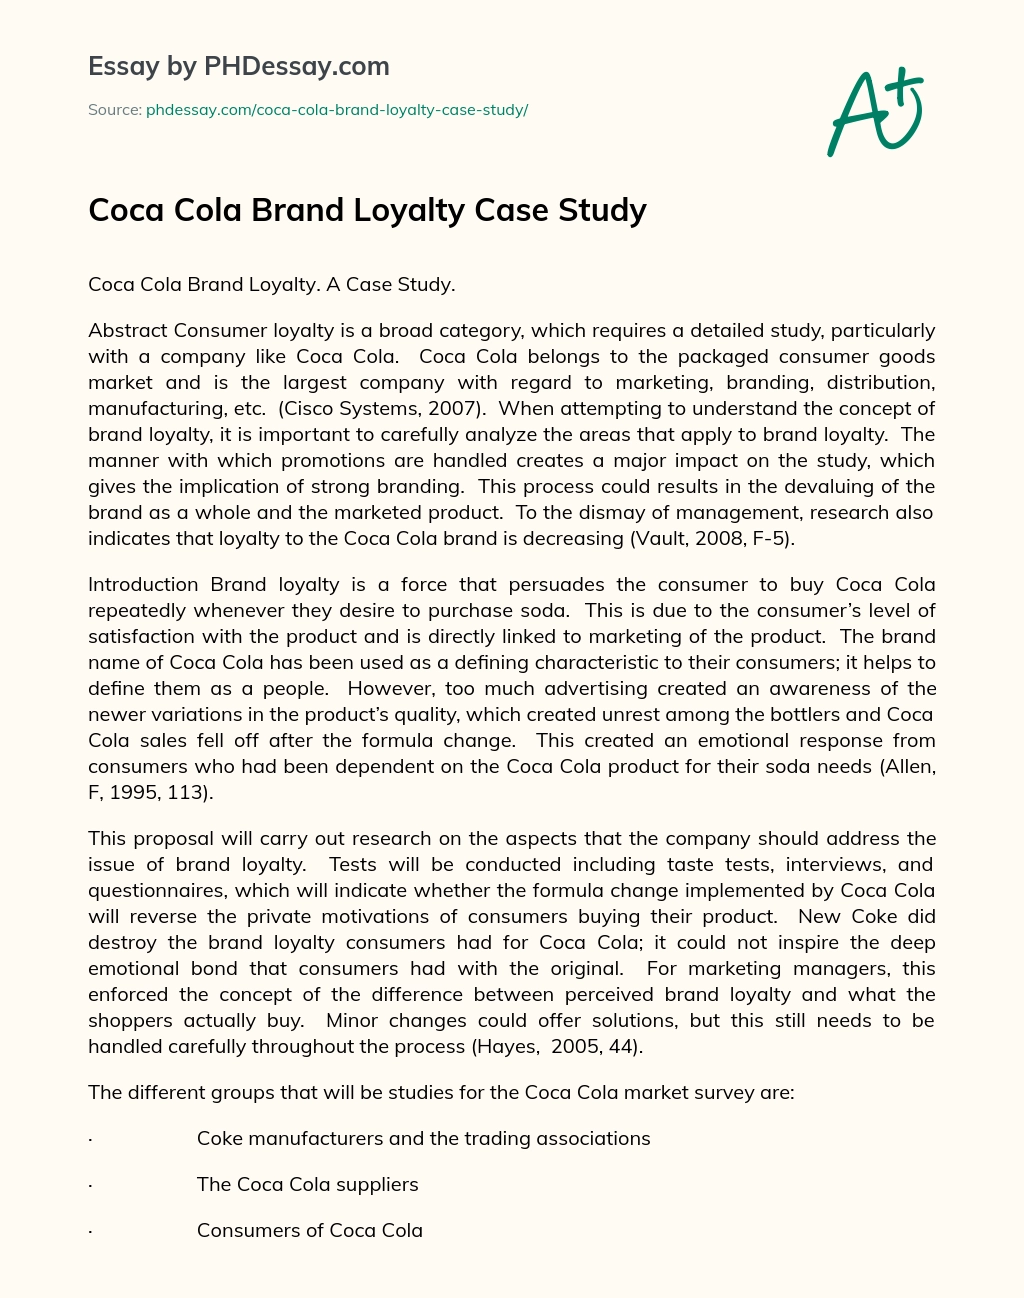 Coca Cola Brand Loyalty Case Study essay